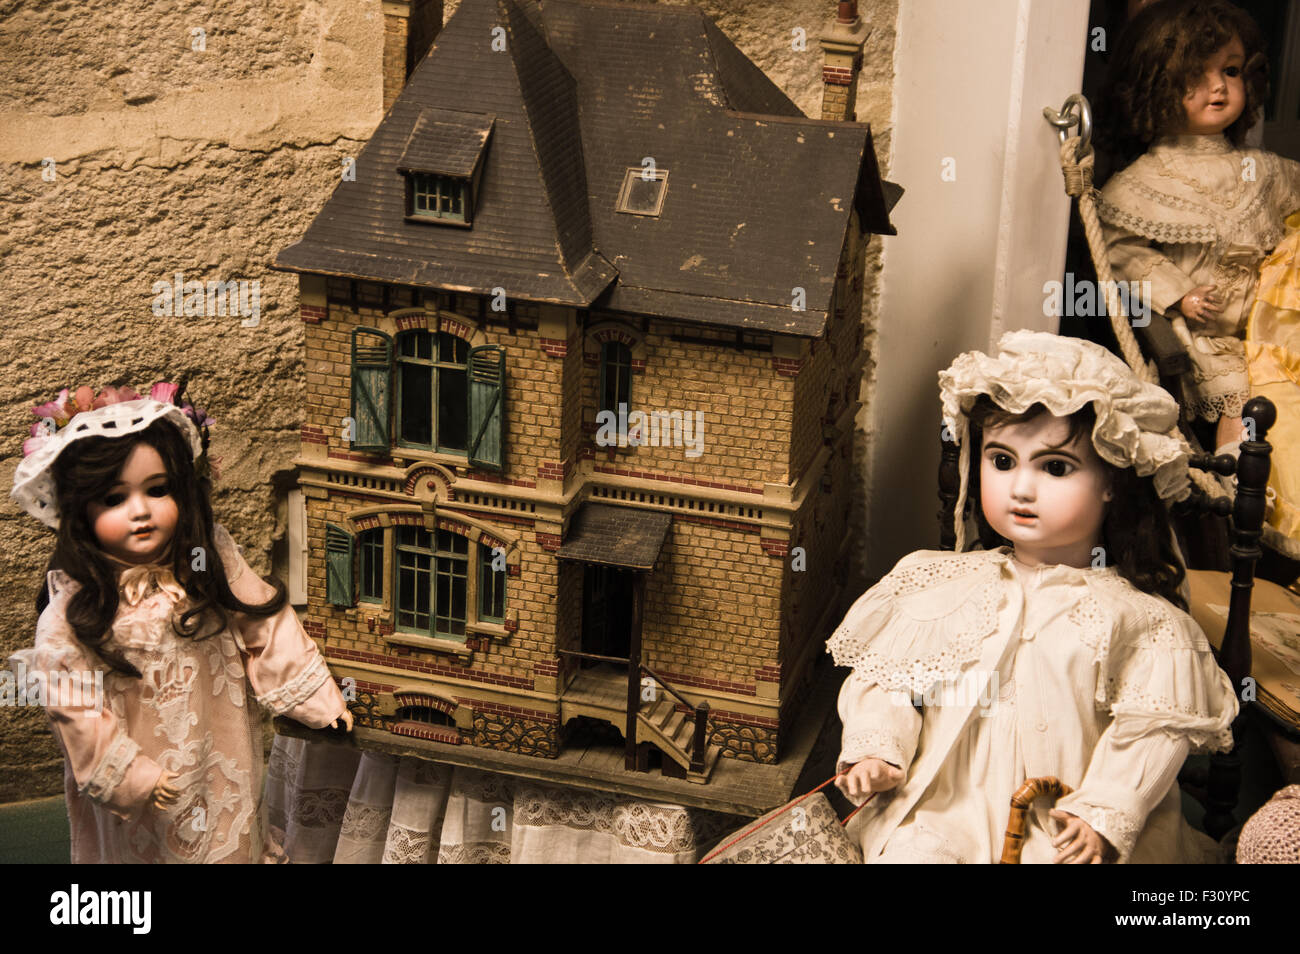 Isle Sur la Sorgue, Frankreich - September 2015 - alte Puppen Privatsammlung in einem Museum. Frankreich, 2015 Stockfoto